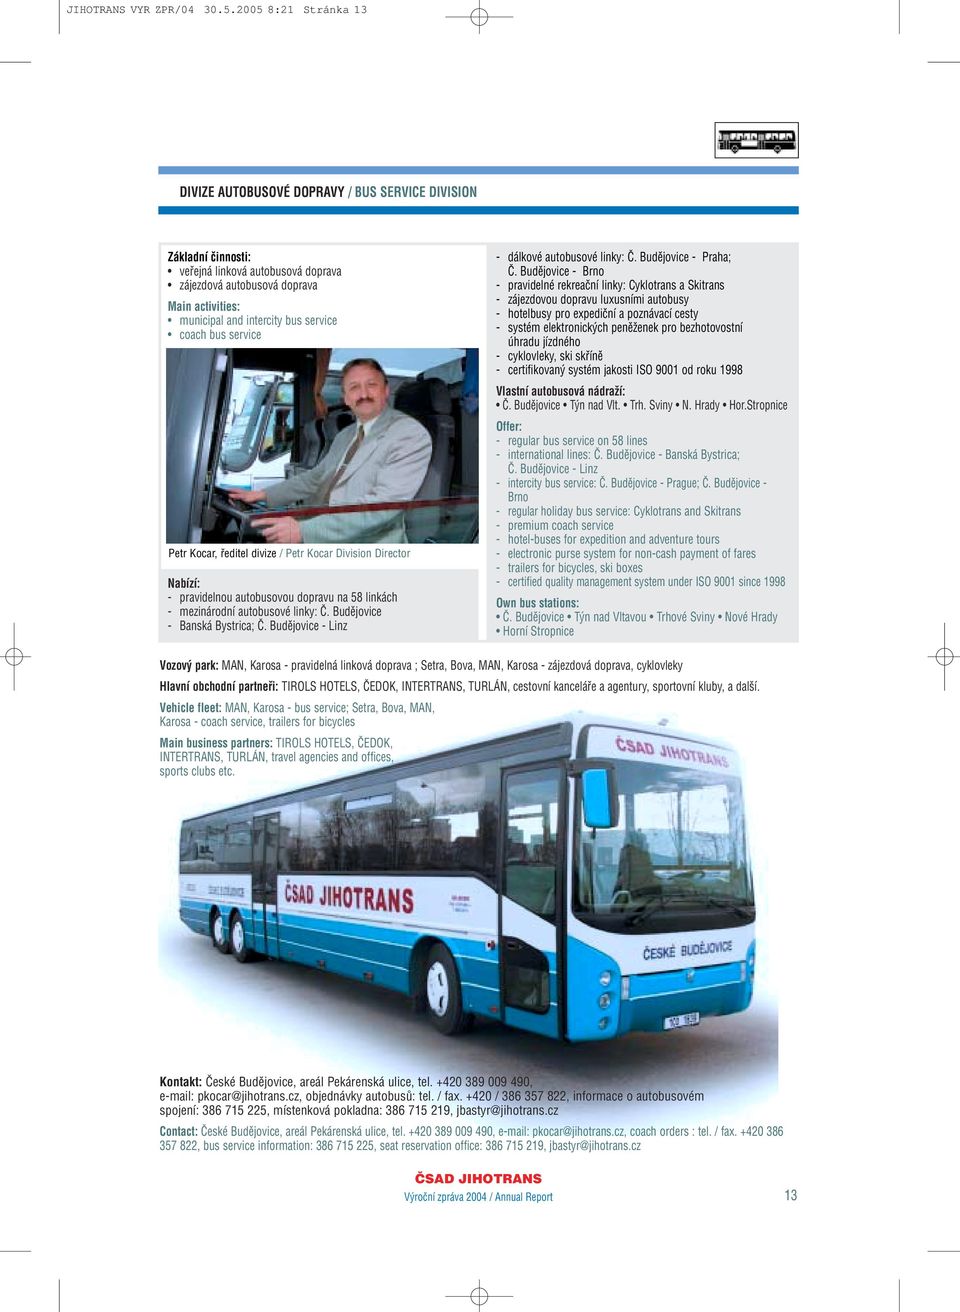 service coach bus service Petr Kocar, fieditel divize / Petr Kocar Division Director Nabízí: - pravidelnou autobusovou dopravu na 58 linkách - mezinárodní autobusové linky: â.